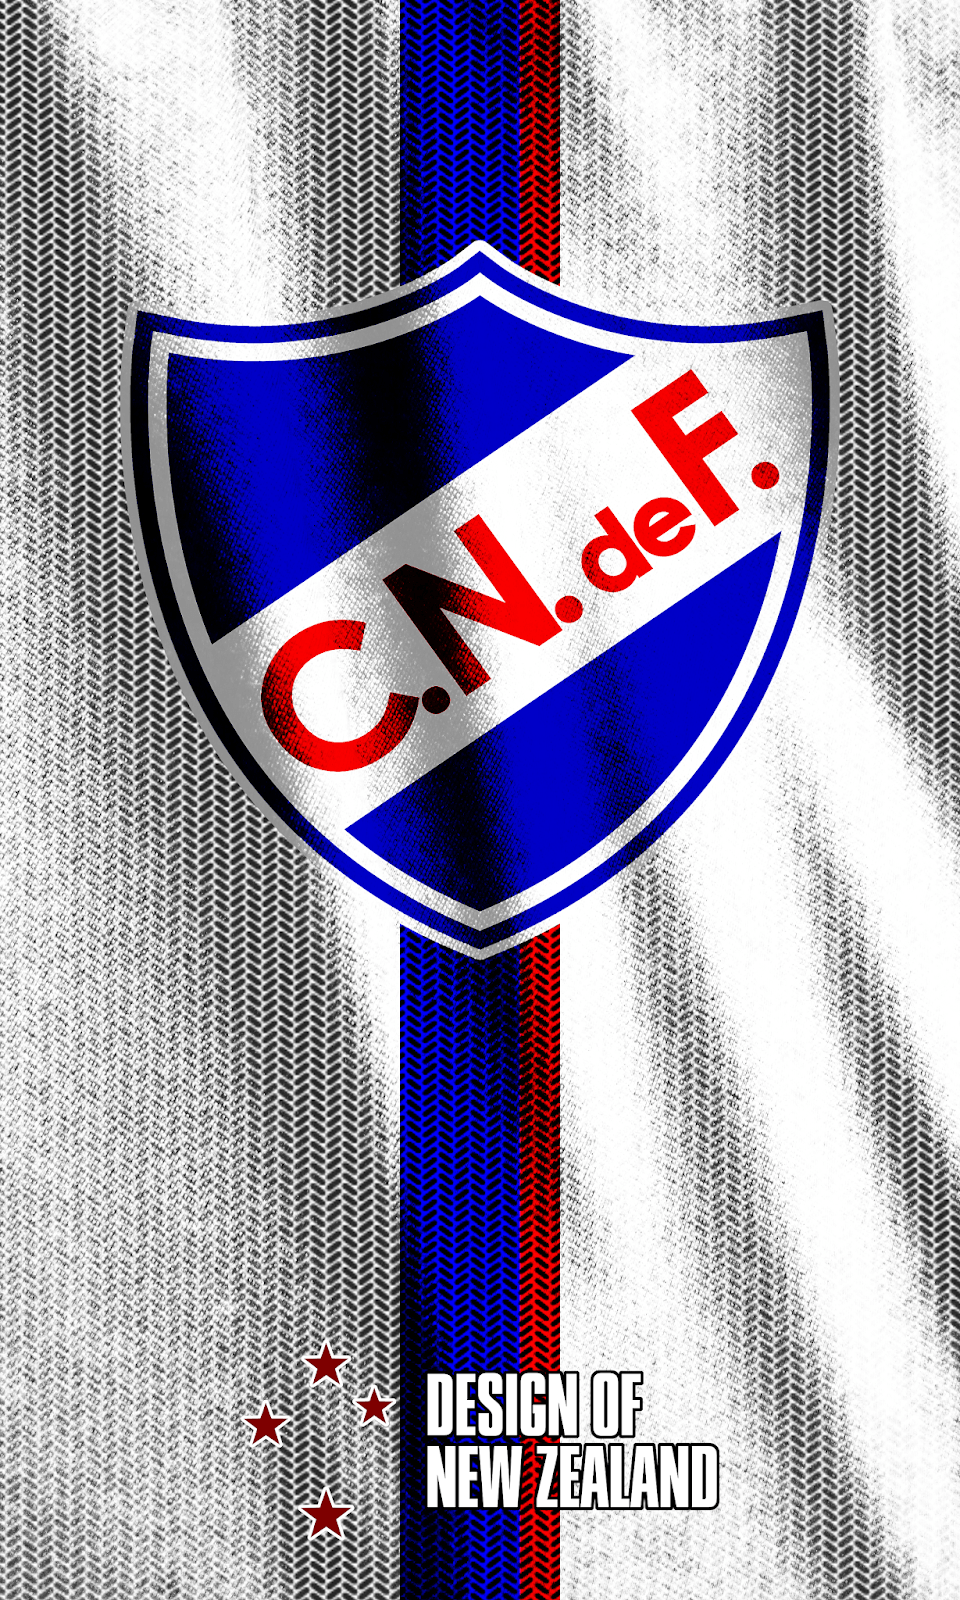 Club.Nacional (@C_N_de_F) / X